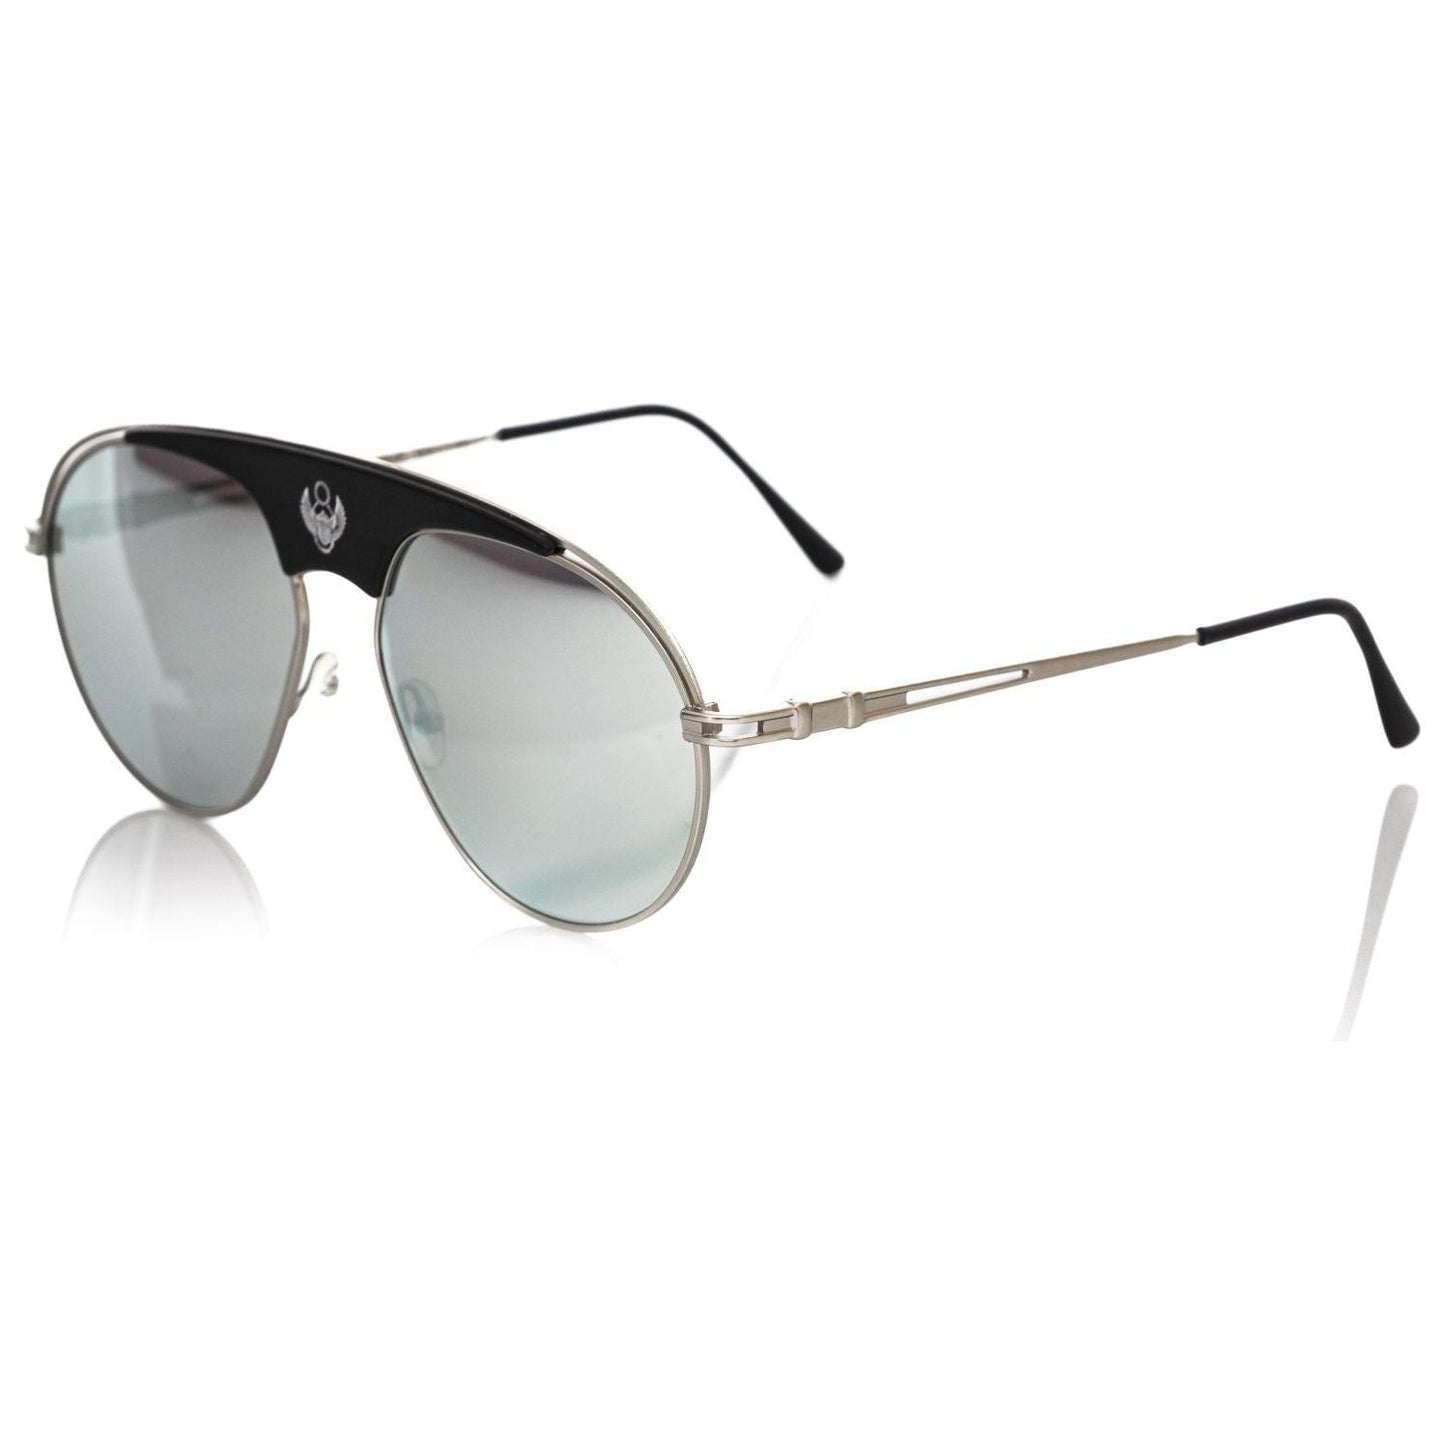 Frankie Morello Chic Shield Smoke Gray Lens Sunglasses multicolor-metallic-fibre-sunglasses